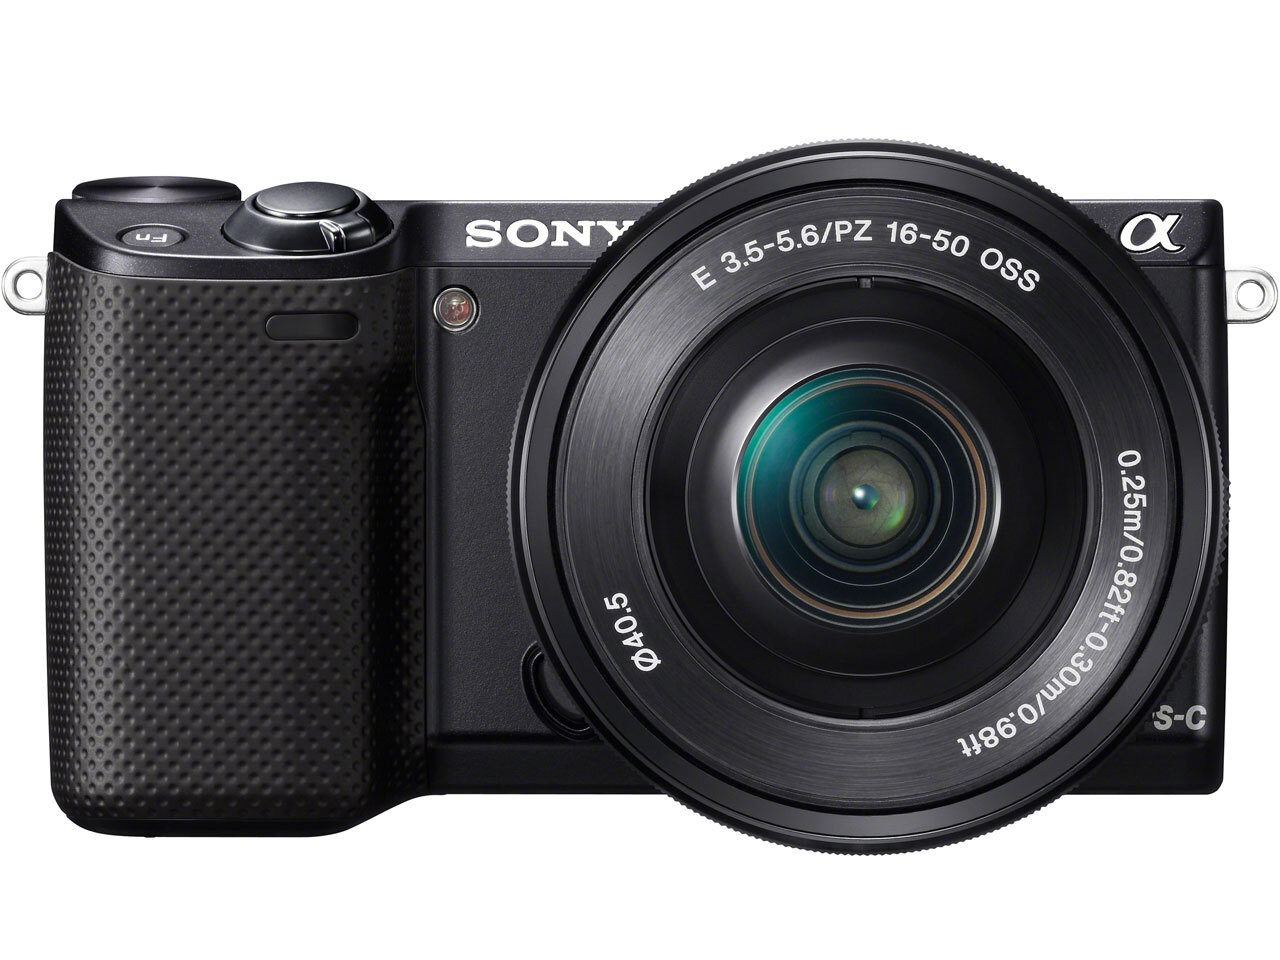 Máy ảnh DSLR Sony Alpha NEX-5RL - 4592 x 3056 pixels